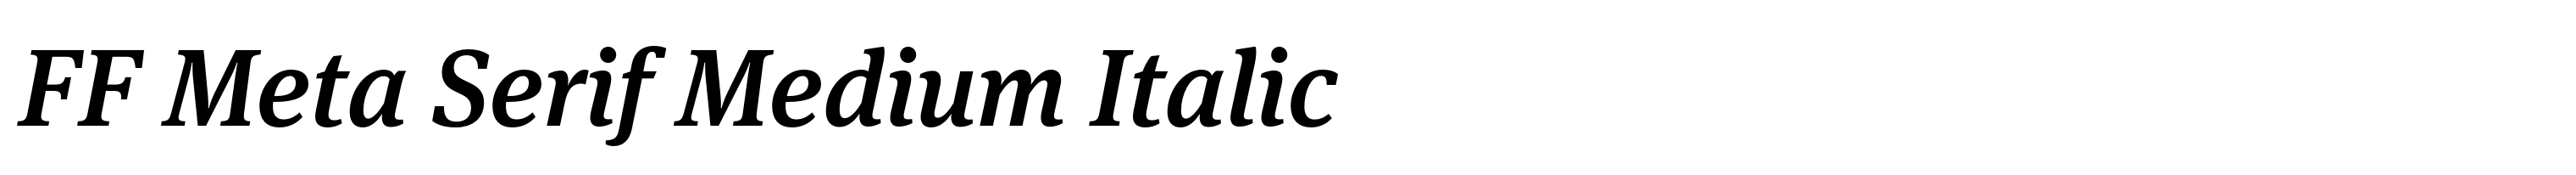 FF Meta Serif Medium Italic